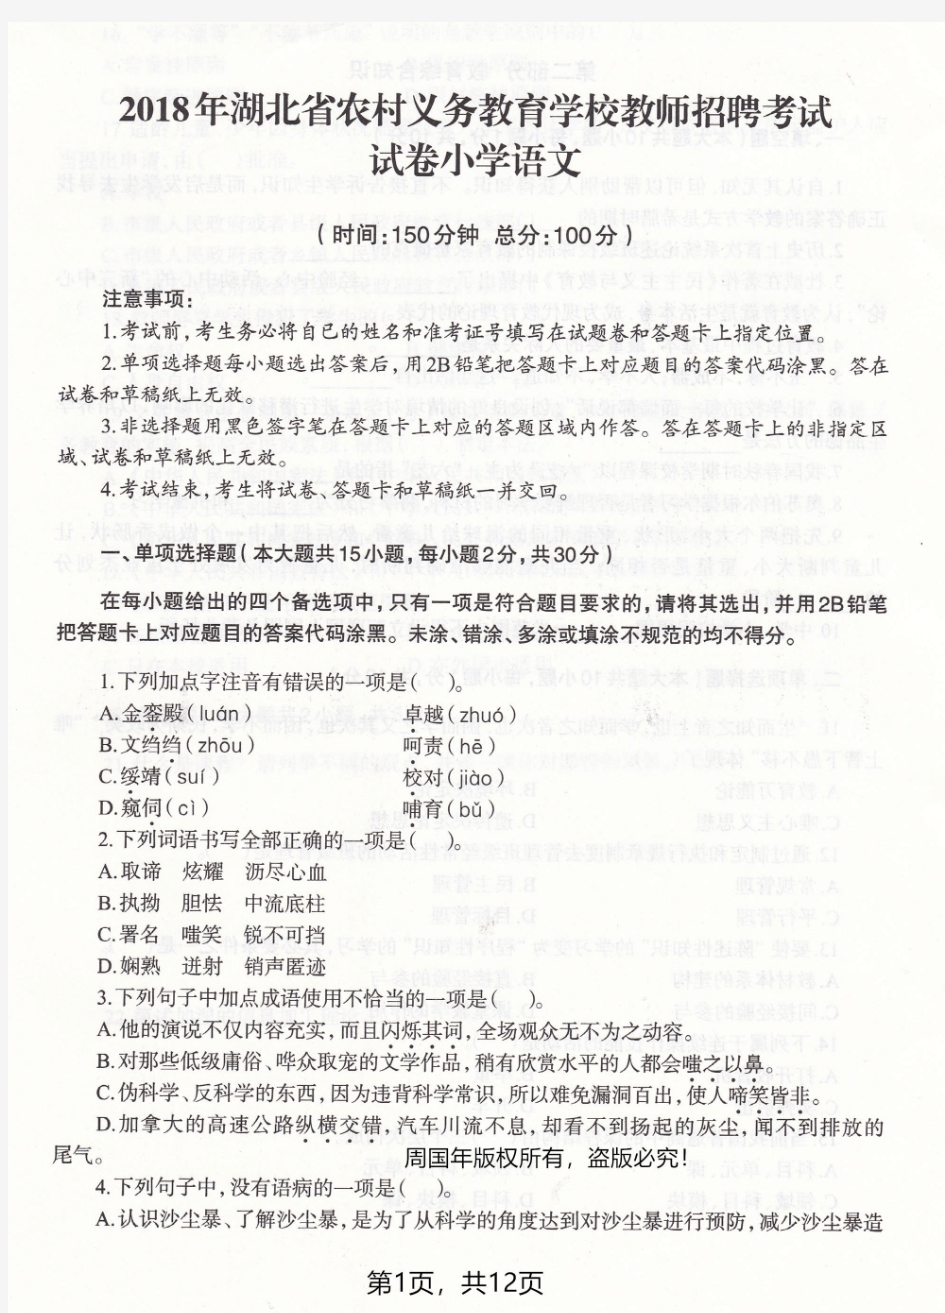 2018年湖北农村教师招聘考试小学语文真题试卷及答案